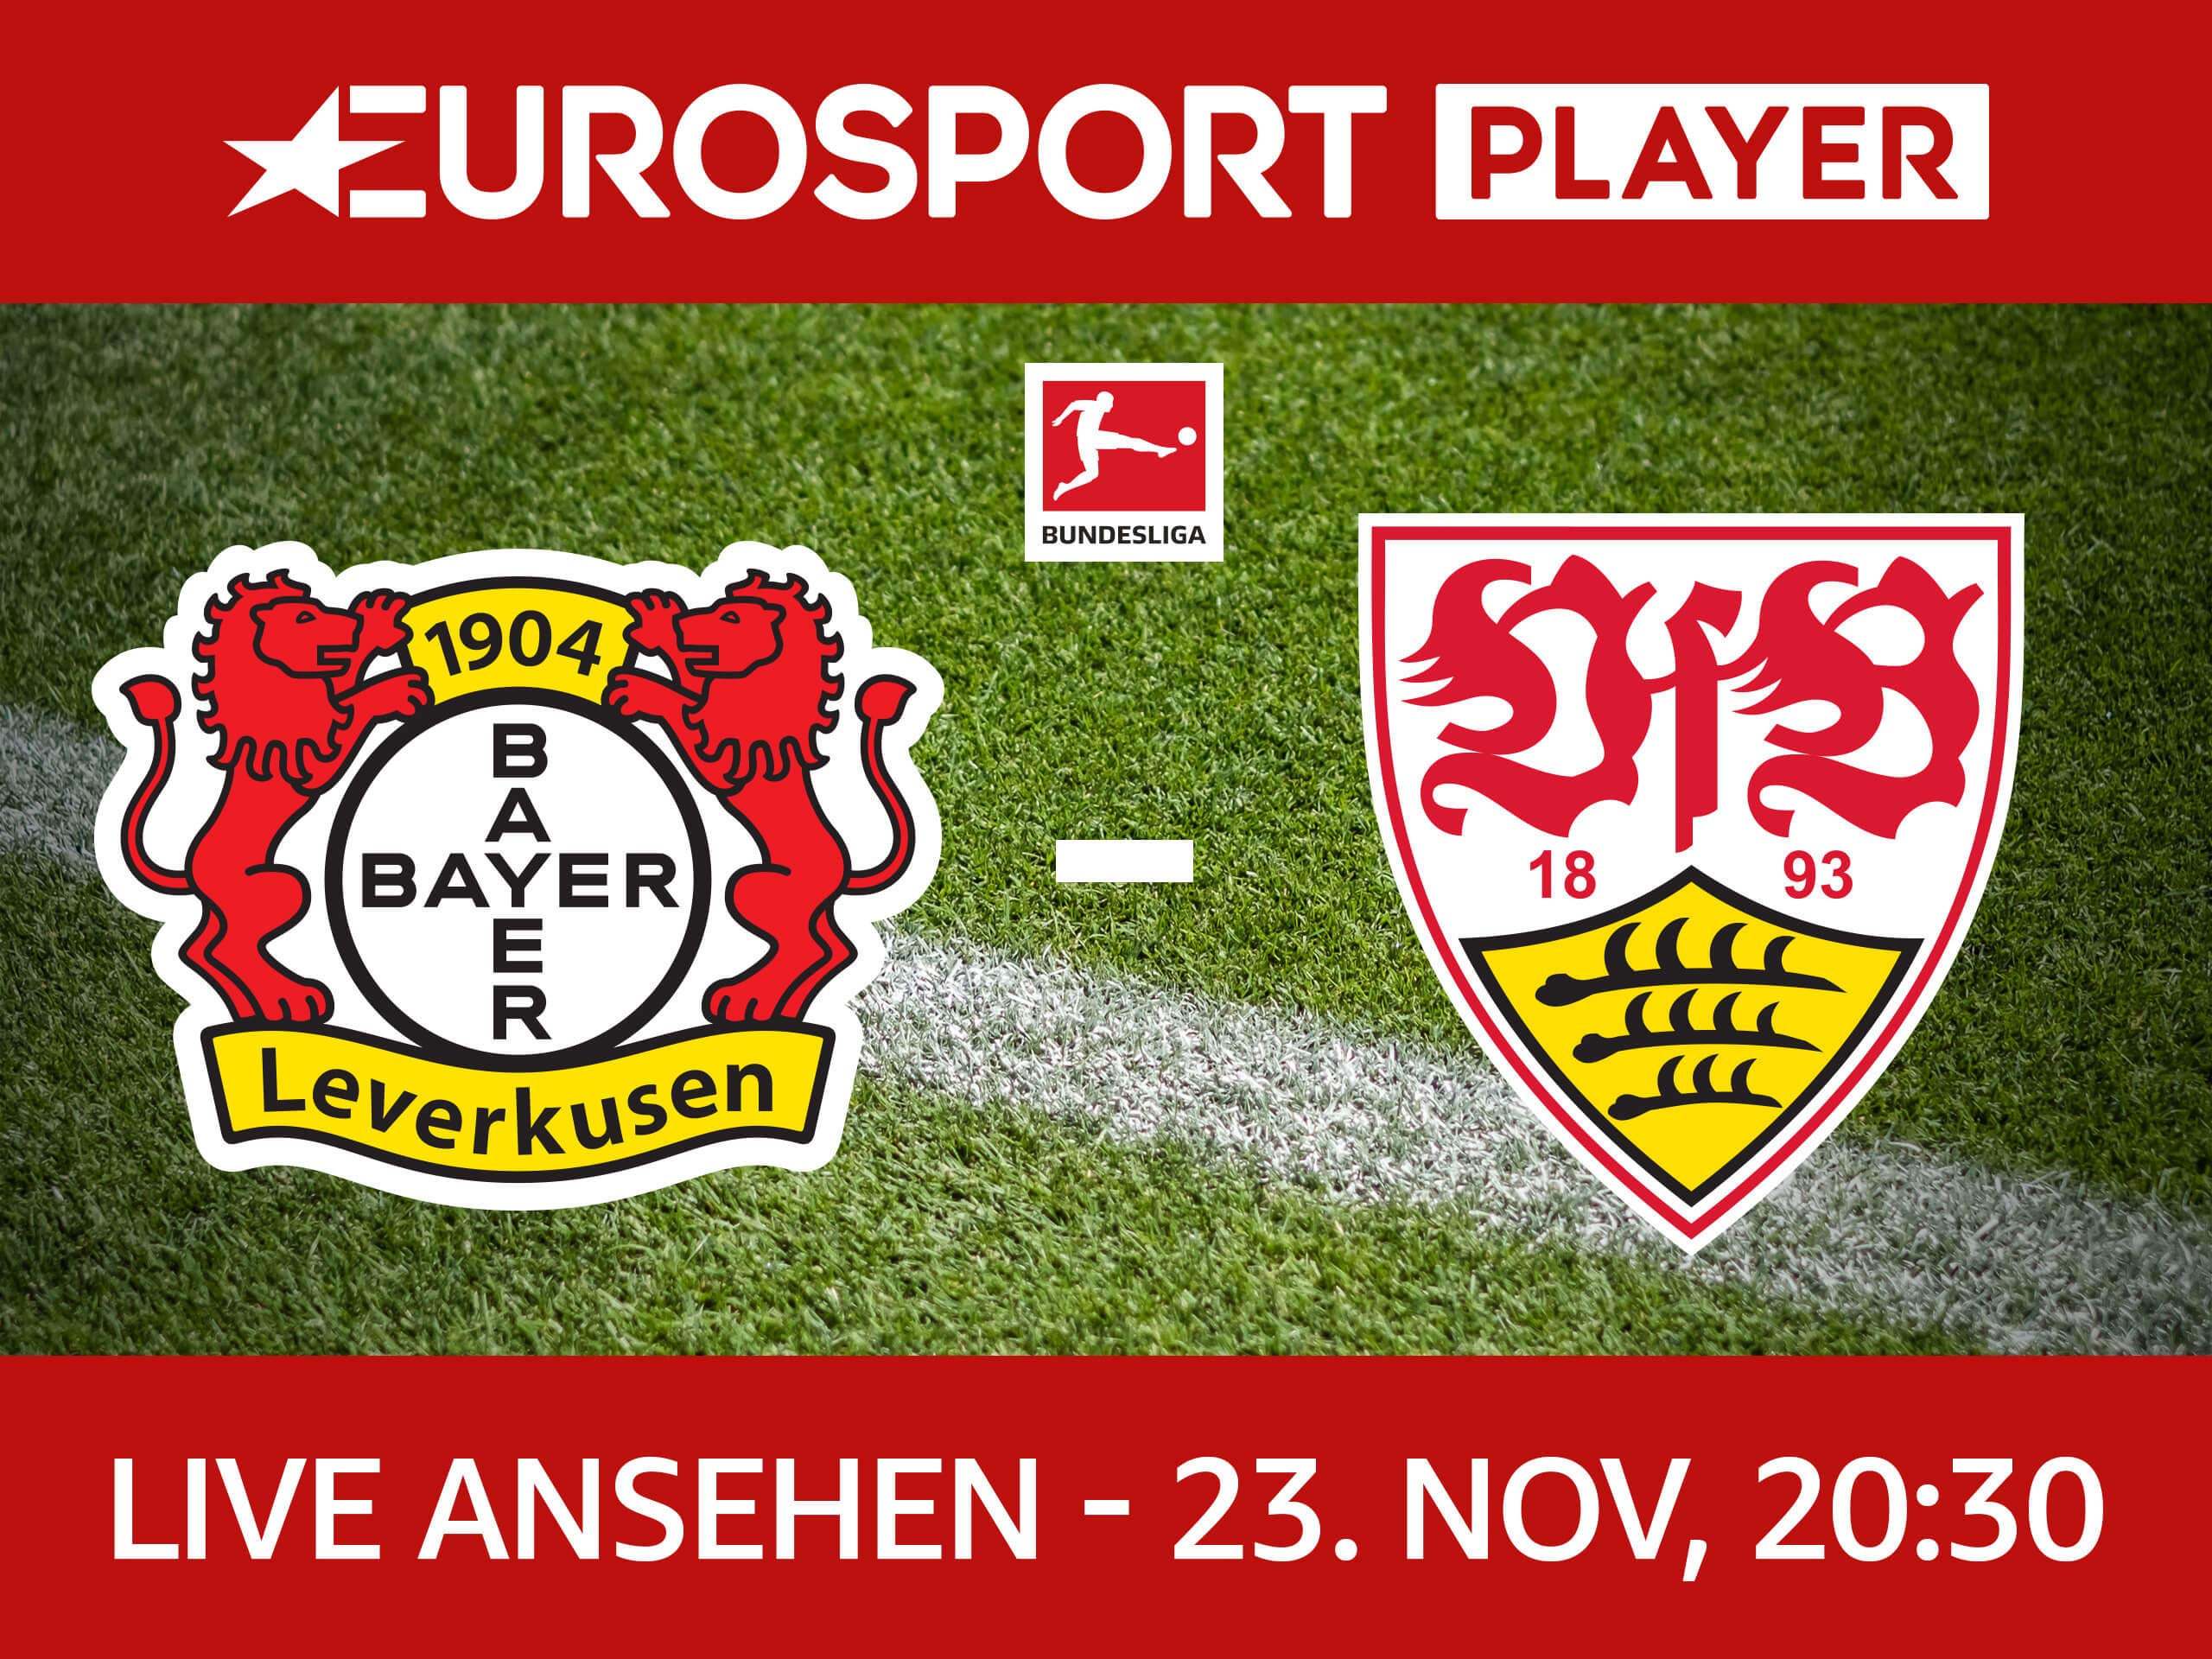 Heute Abend live auf Eurosport Bayer 04 Leverkusen VfB Stuttgart